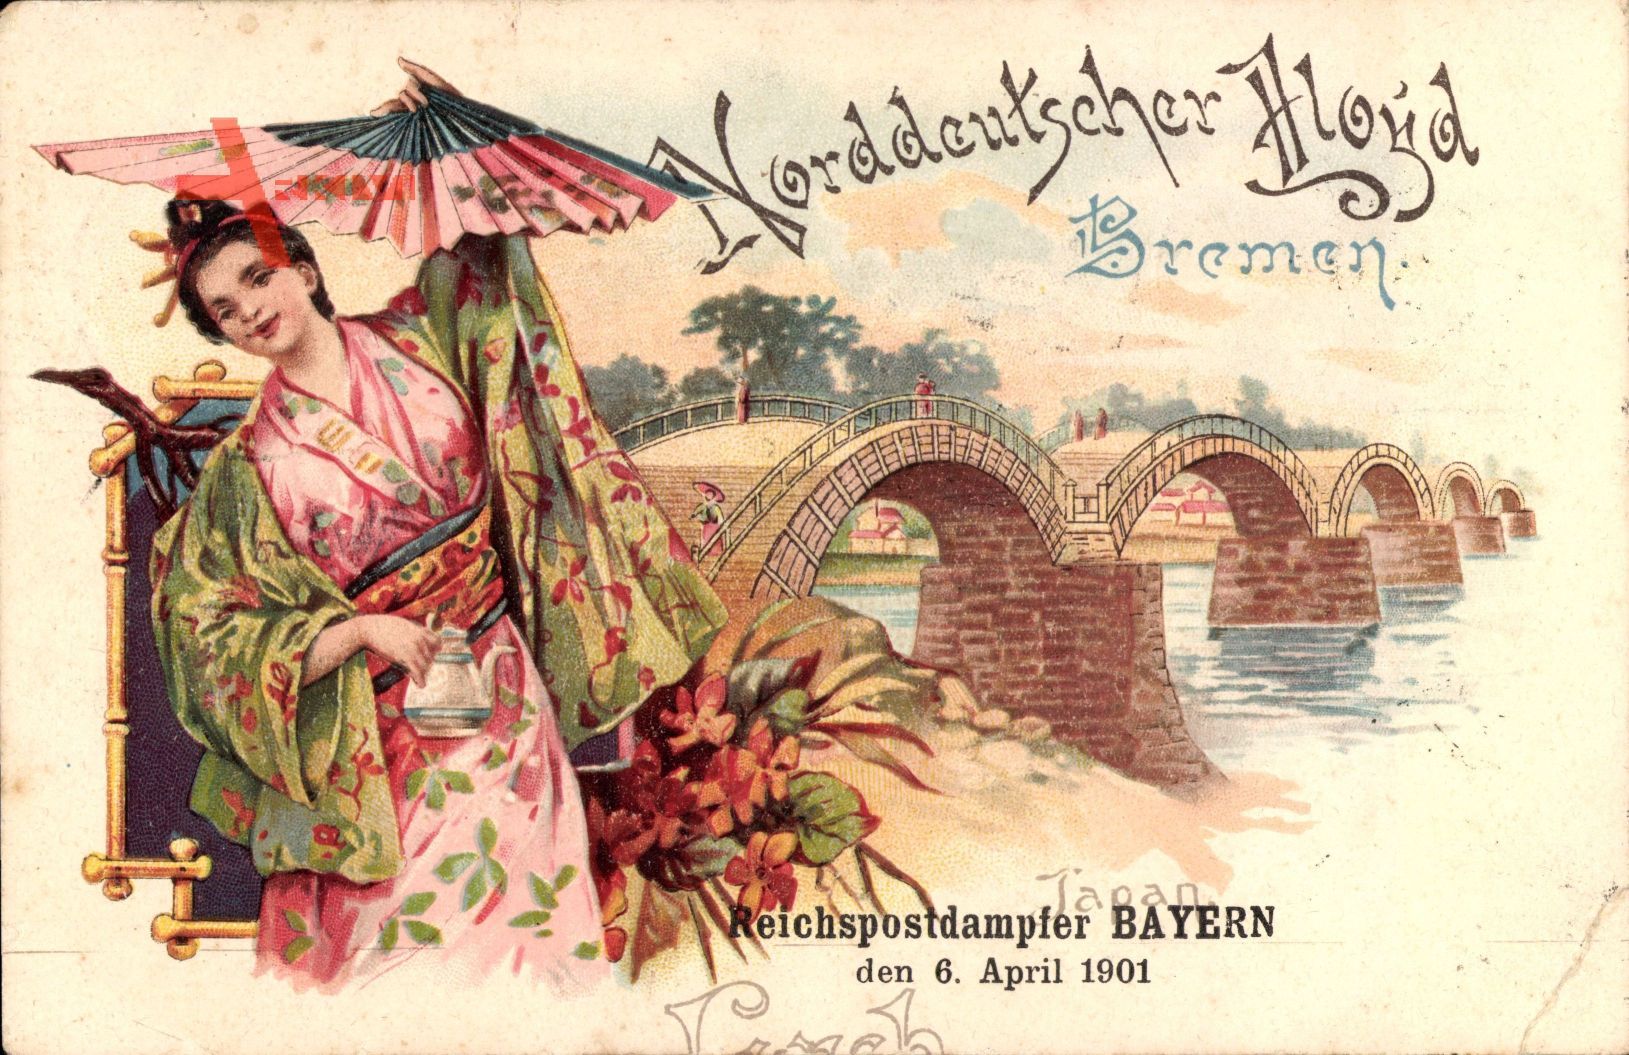 Bremen, Norddeutscher Lloyd Bremen, Reichspostdampfer Bayern, 6 April 1901